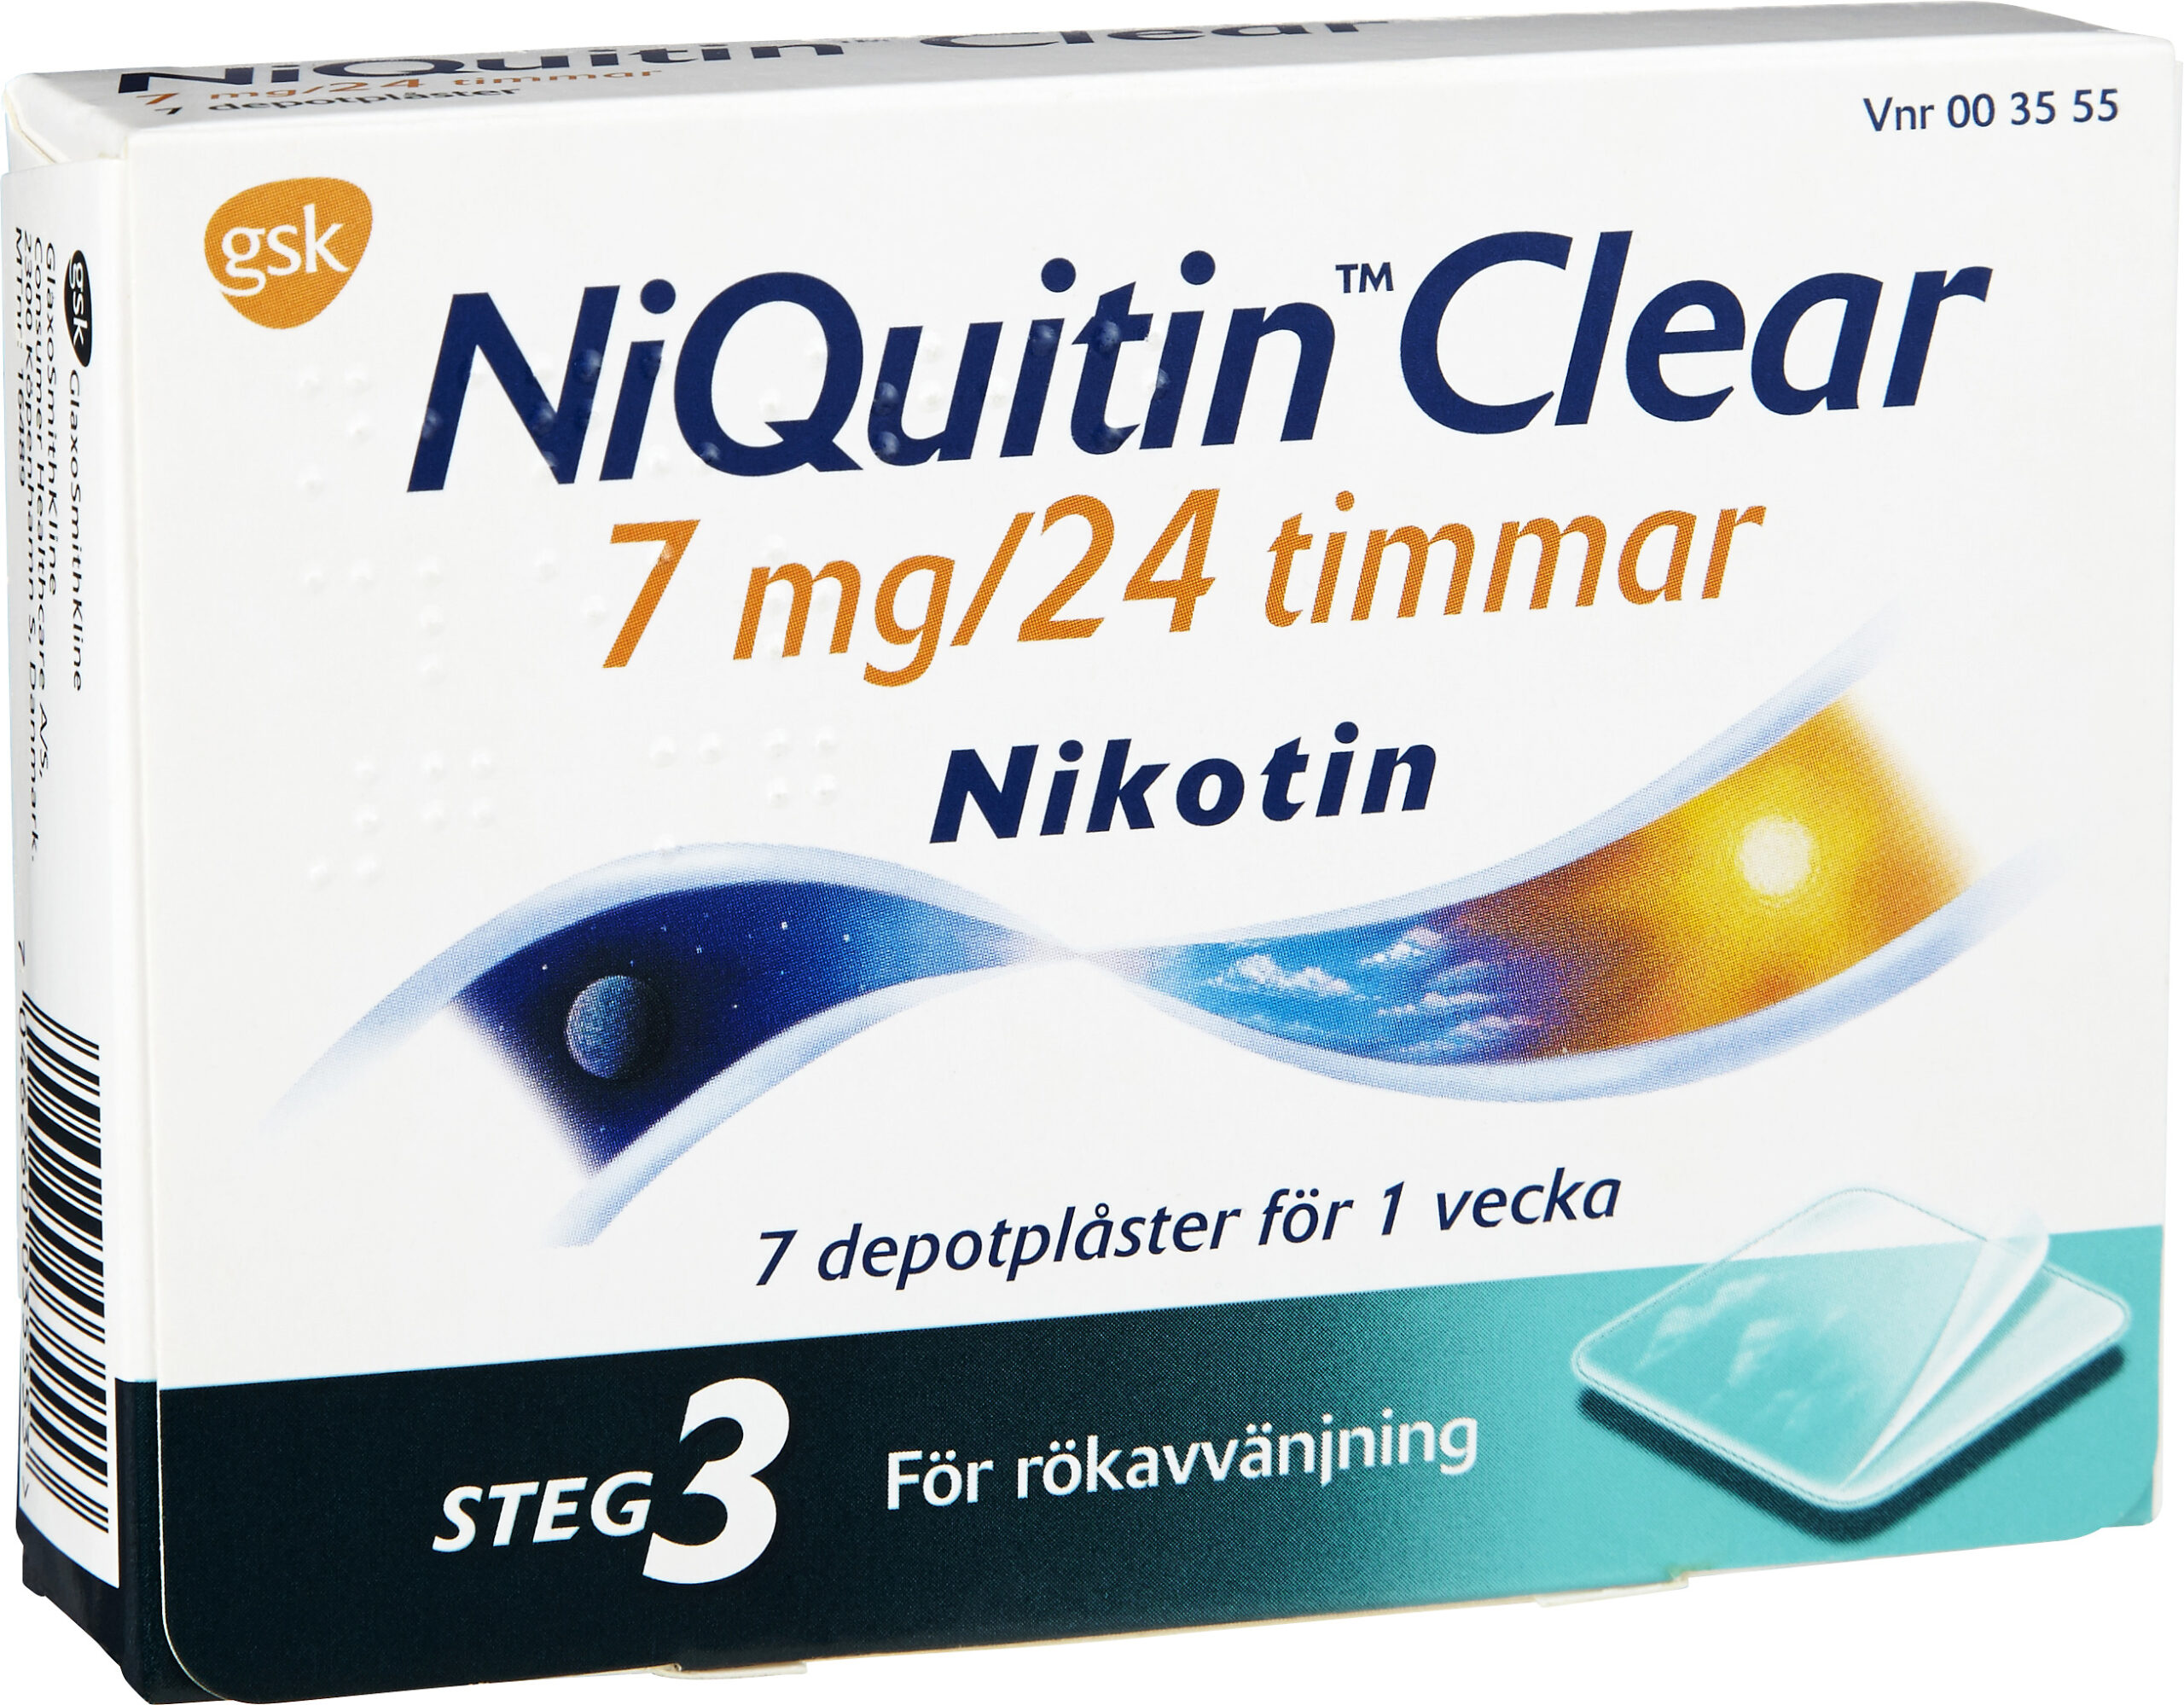 NiQuitin Clear depotplåster 7 mg/24 timmar 7 st